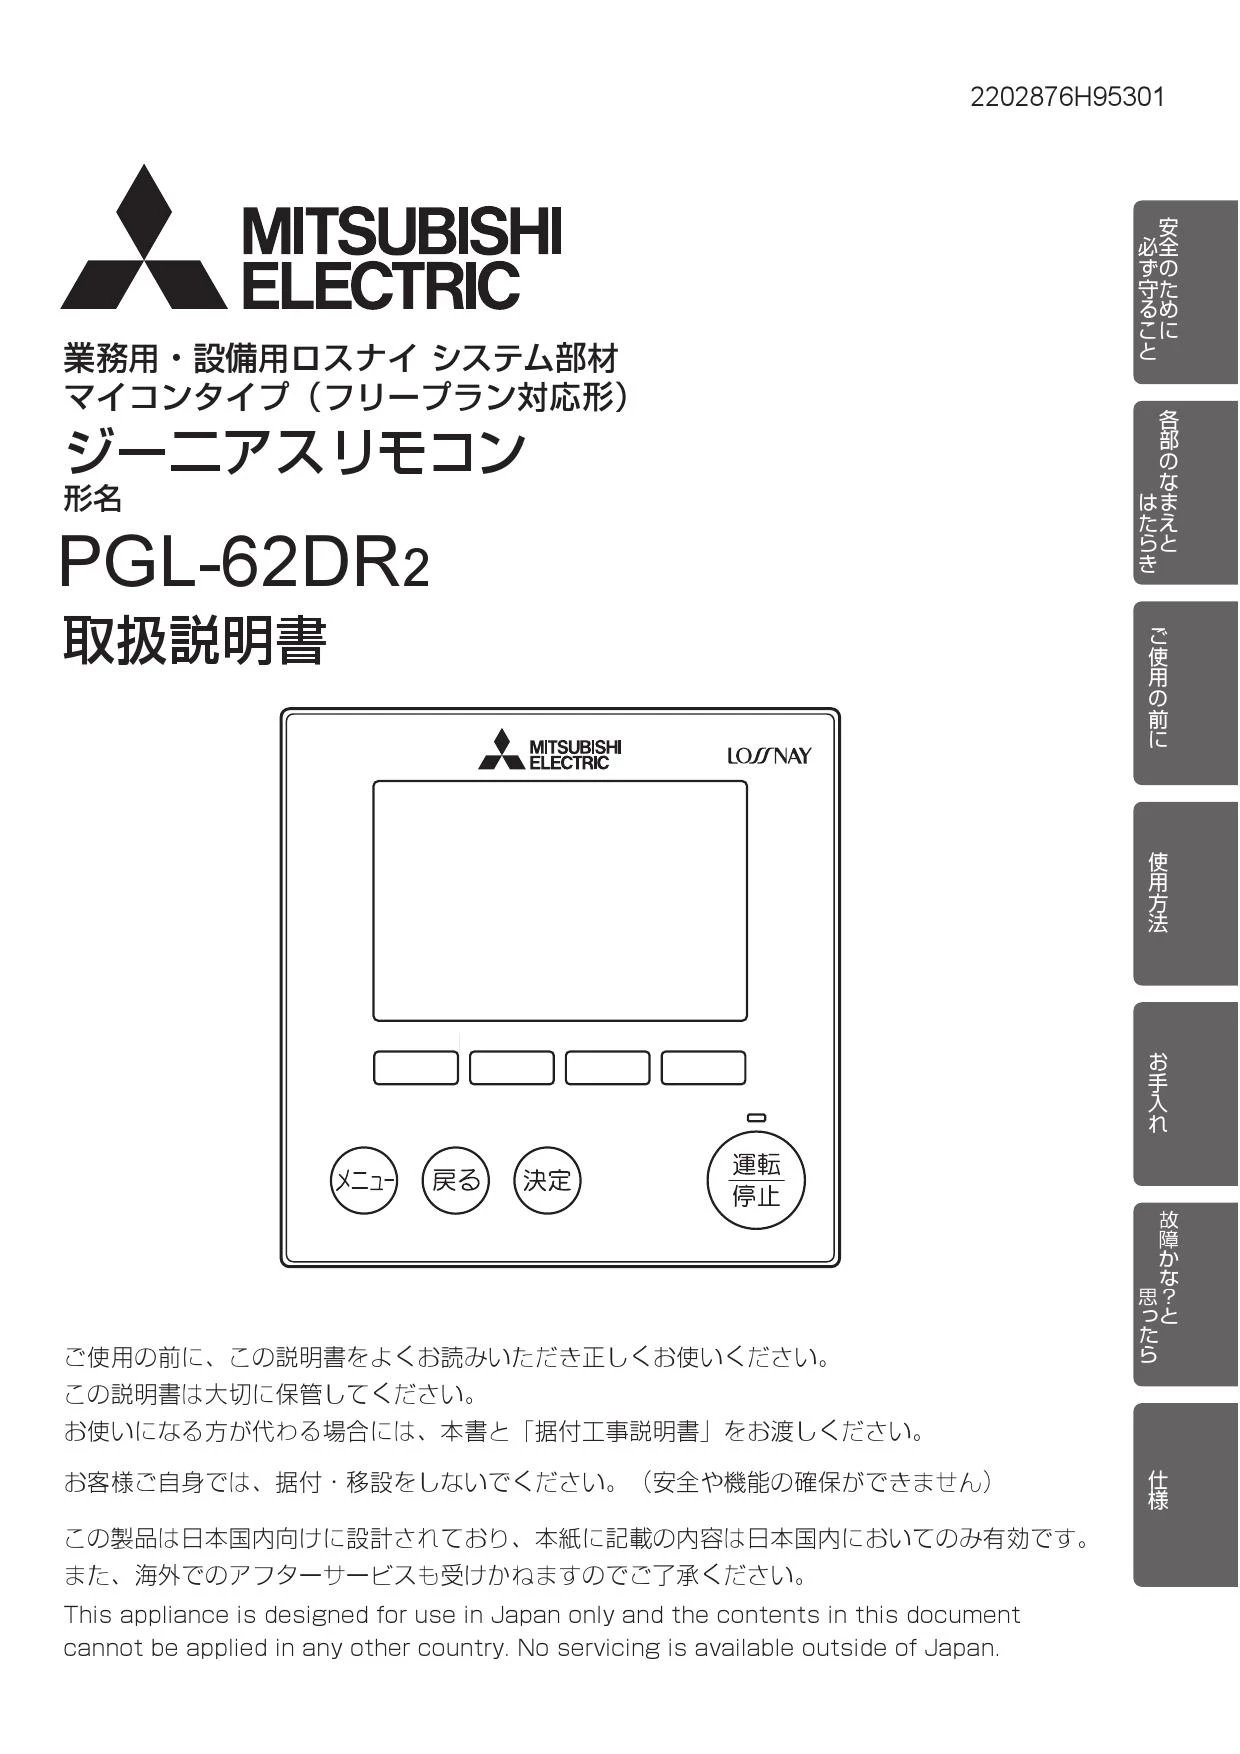 三菱電機 PGL-62DR2取扱説明書 施工説明書 納入仕様図 | 通販 プロ